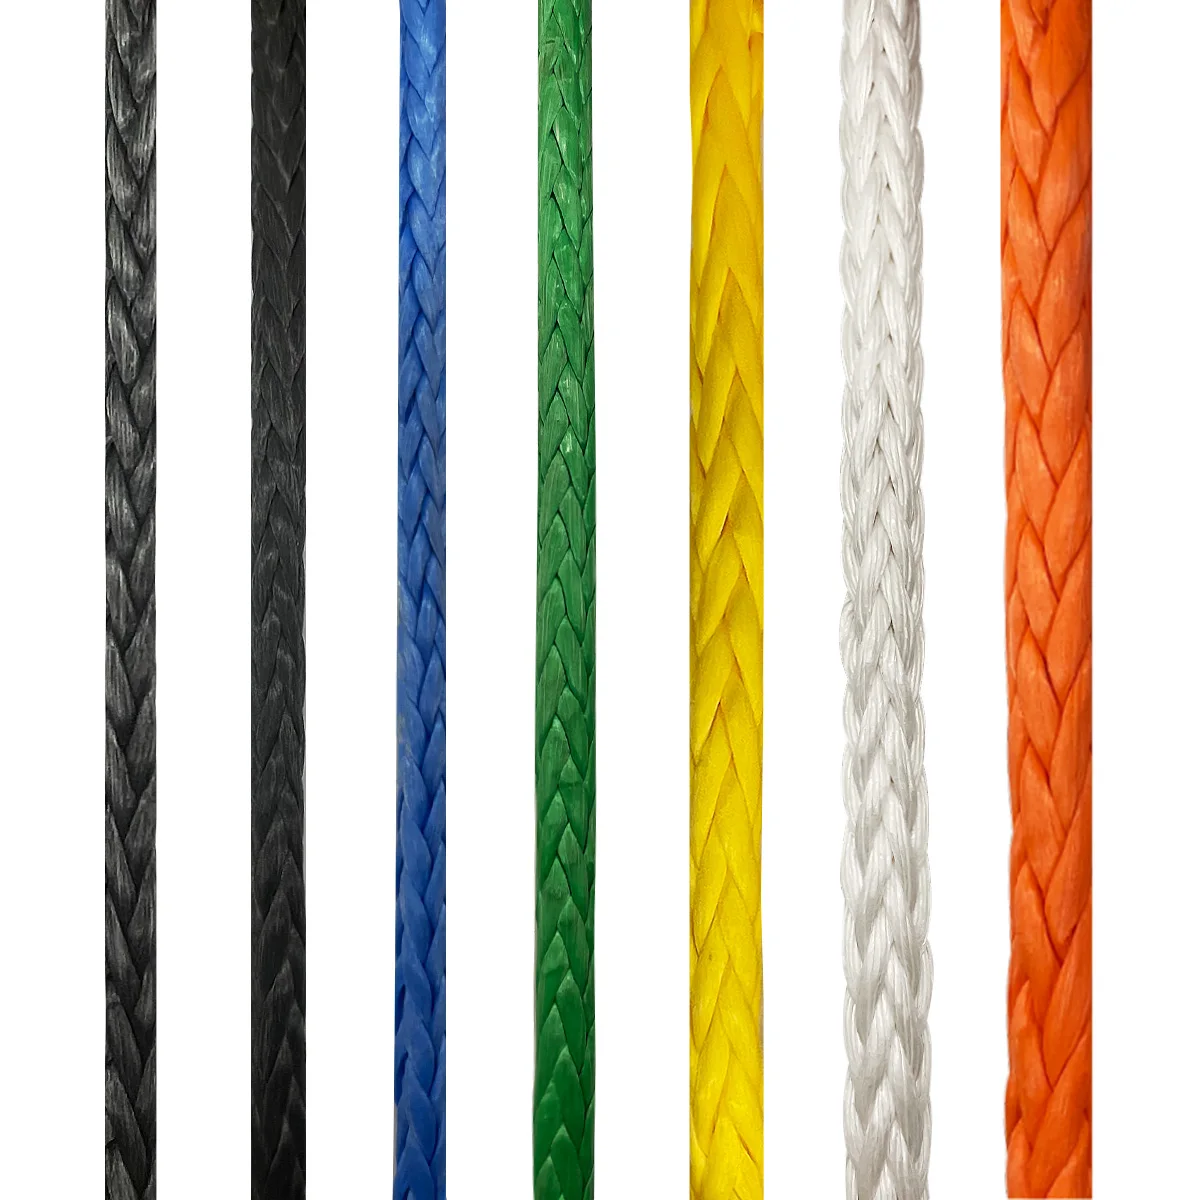 Dažādu krāsu sintētiska 12 šķipsnu pīta virve pietauvošanai ar vinču vilkšanai